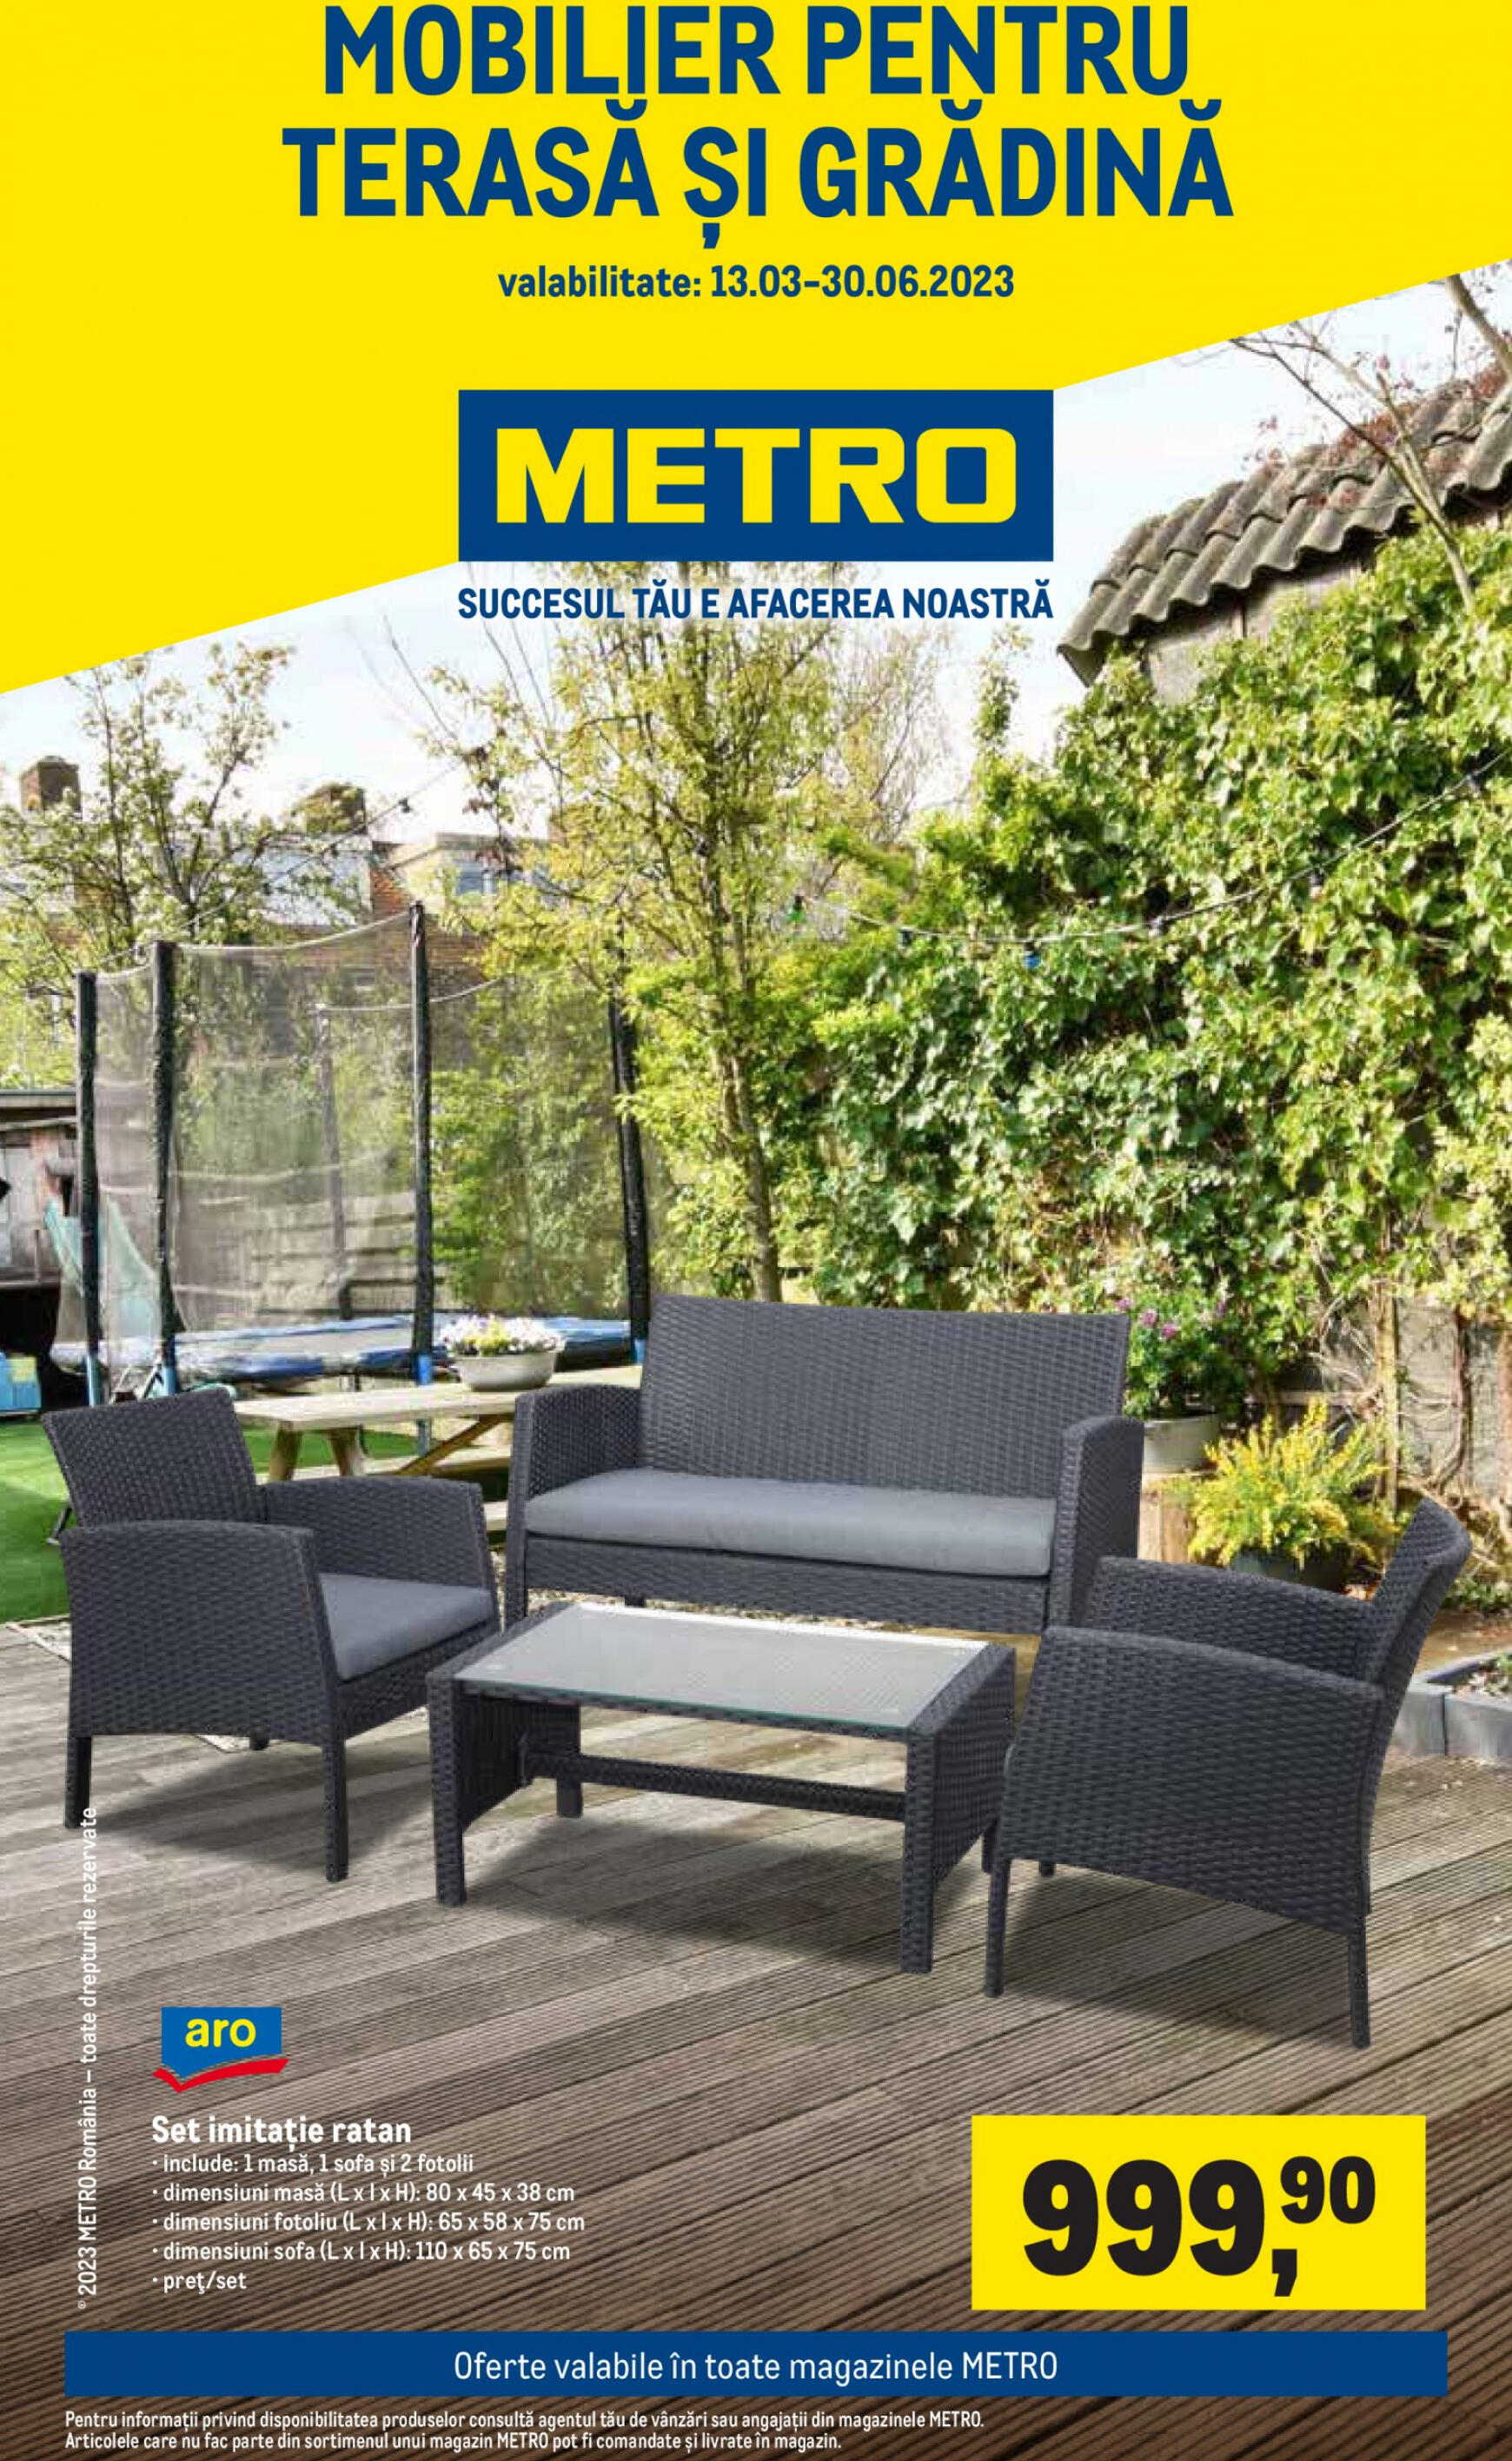 metro - Metro - Mobilier pentru terasă și grădină - page: 1